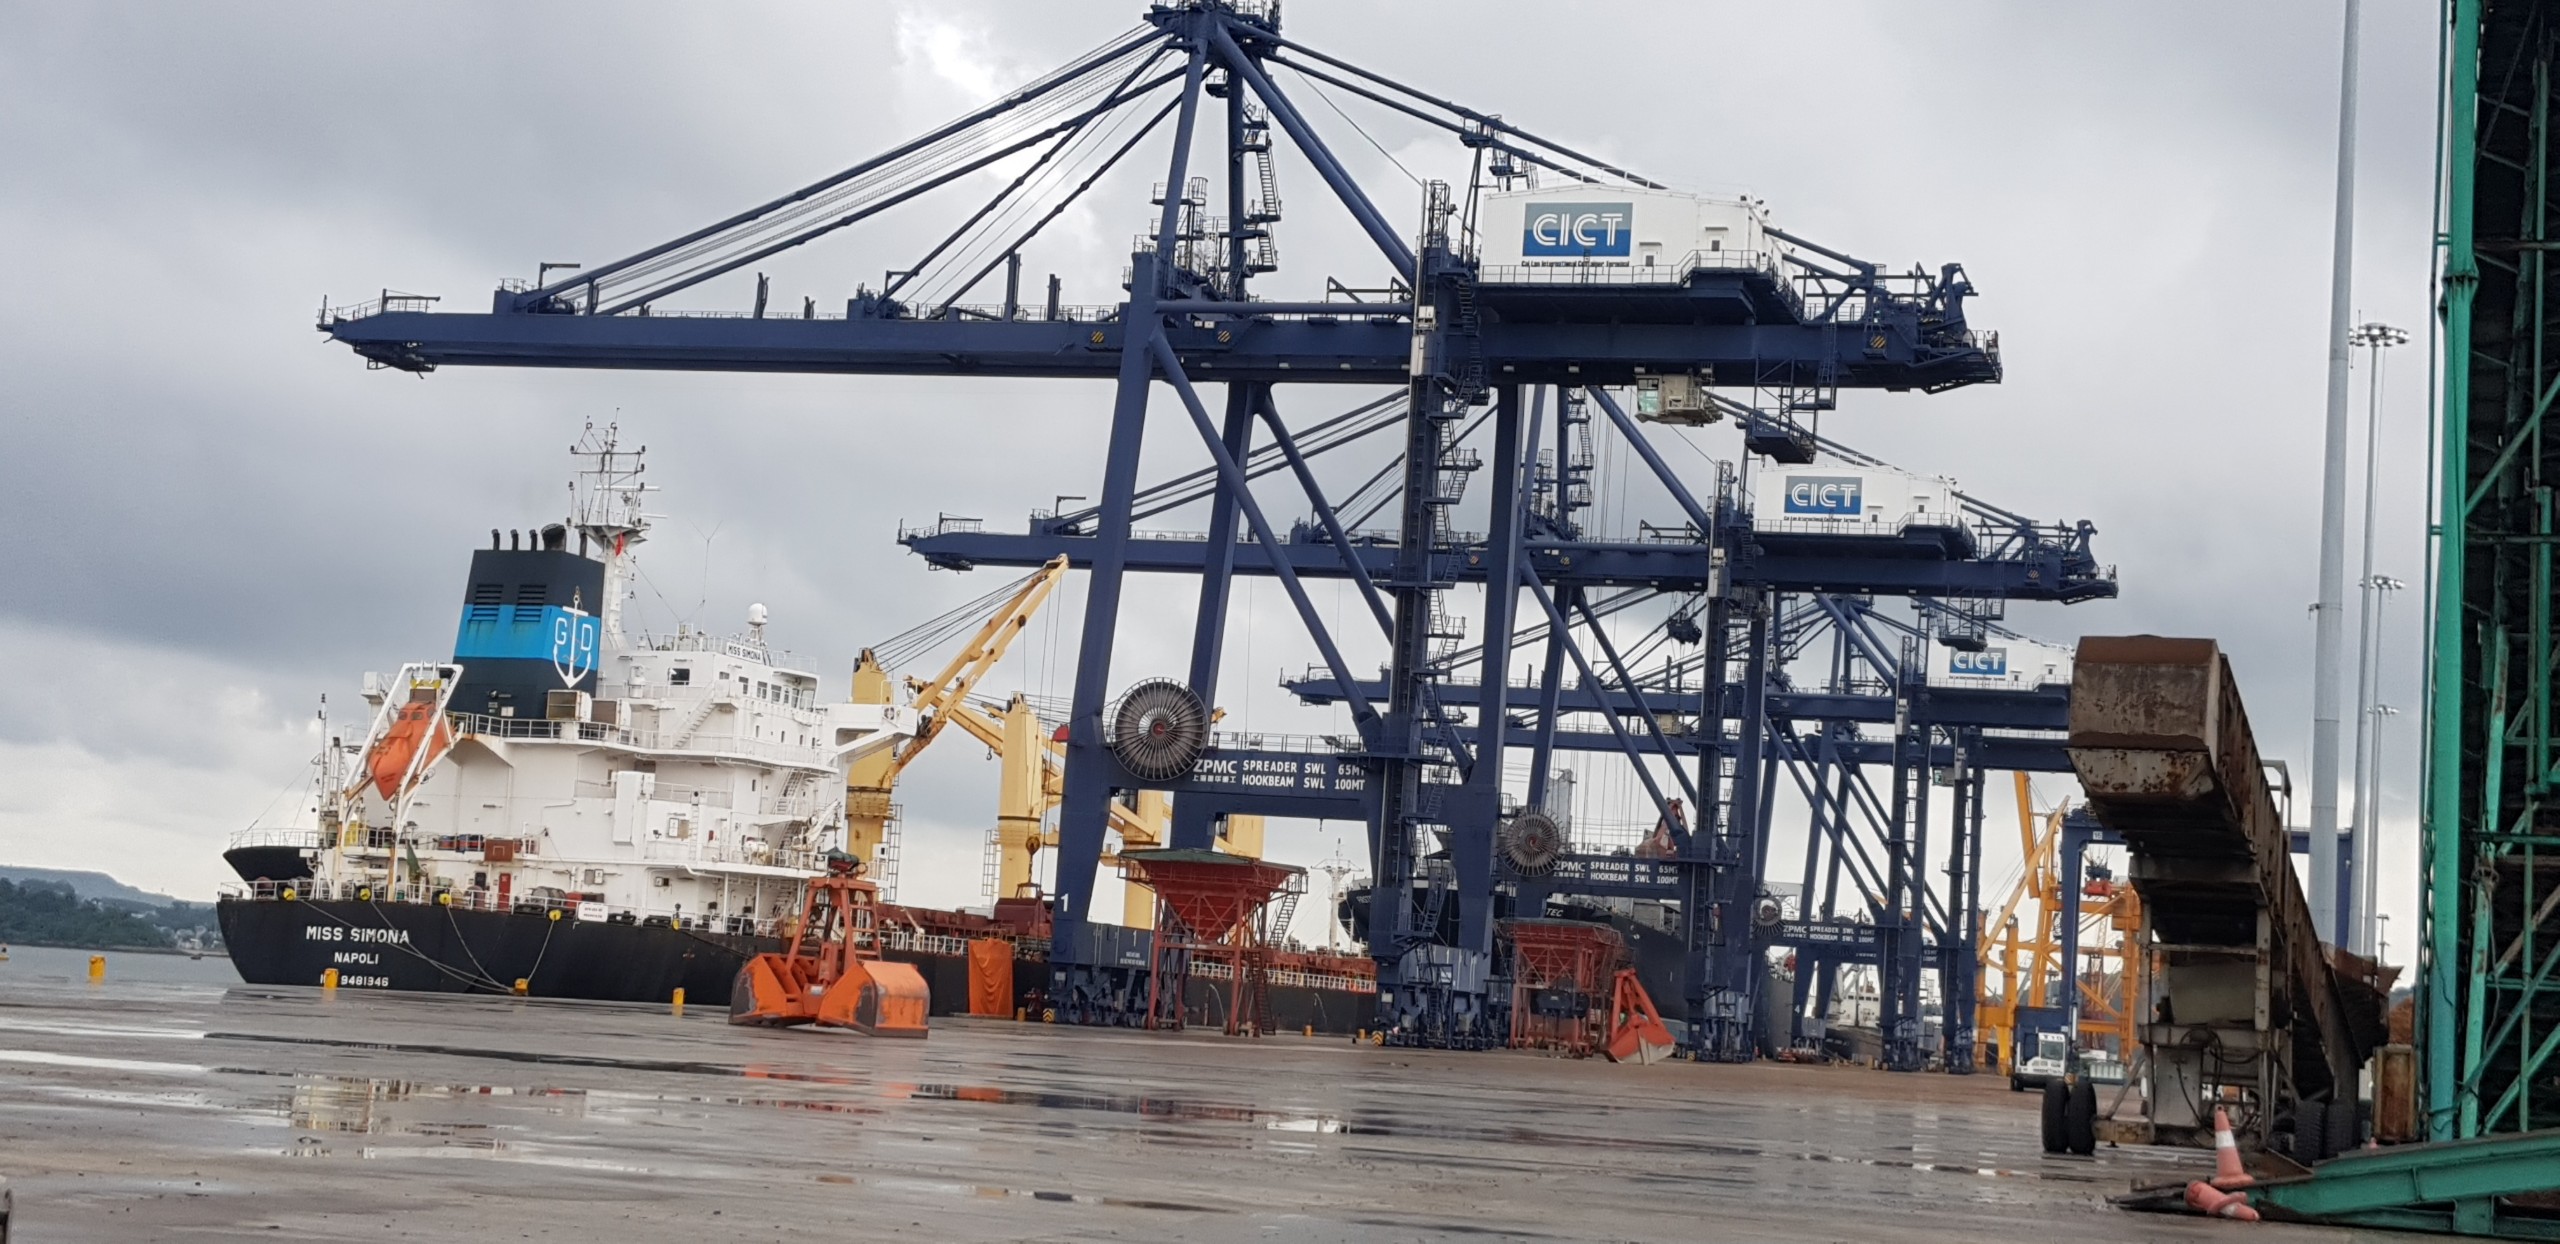 Tổng Hợp Tầu Nông Sản cảng Cái Lân Tháng 07.2020